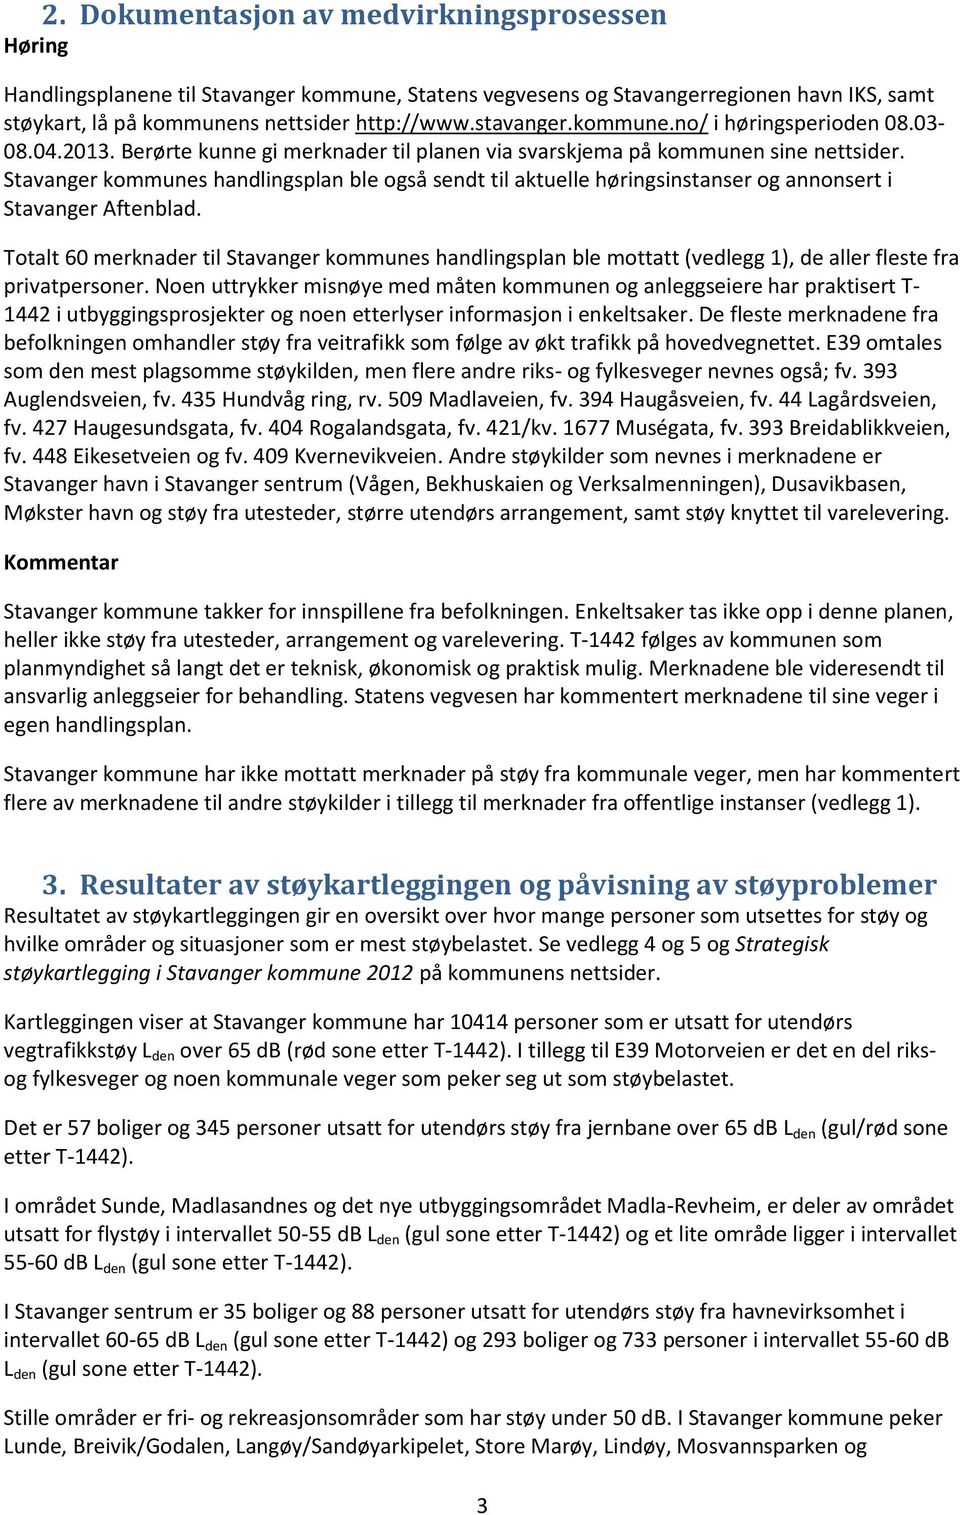 Stavanger kommunes handlingsplan ble også sendt til aktuelle høringsinstanser og annonsert i Stavanger Aftenblad.